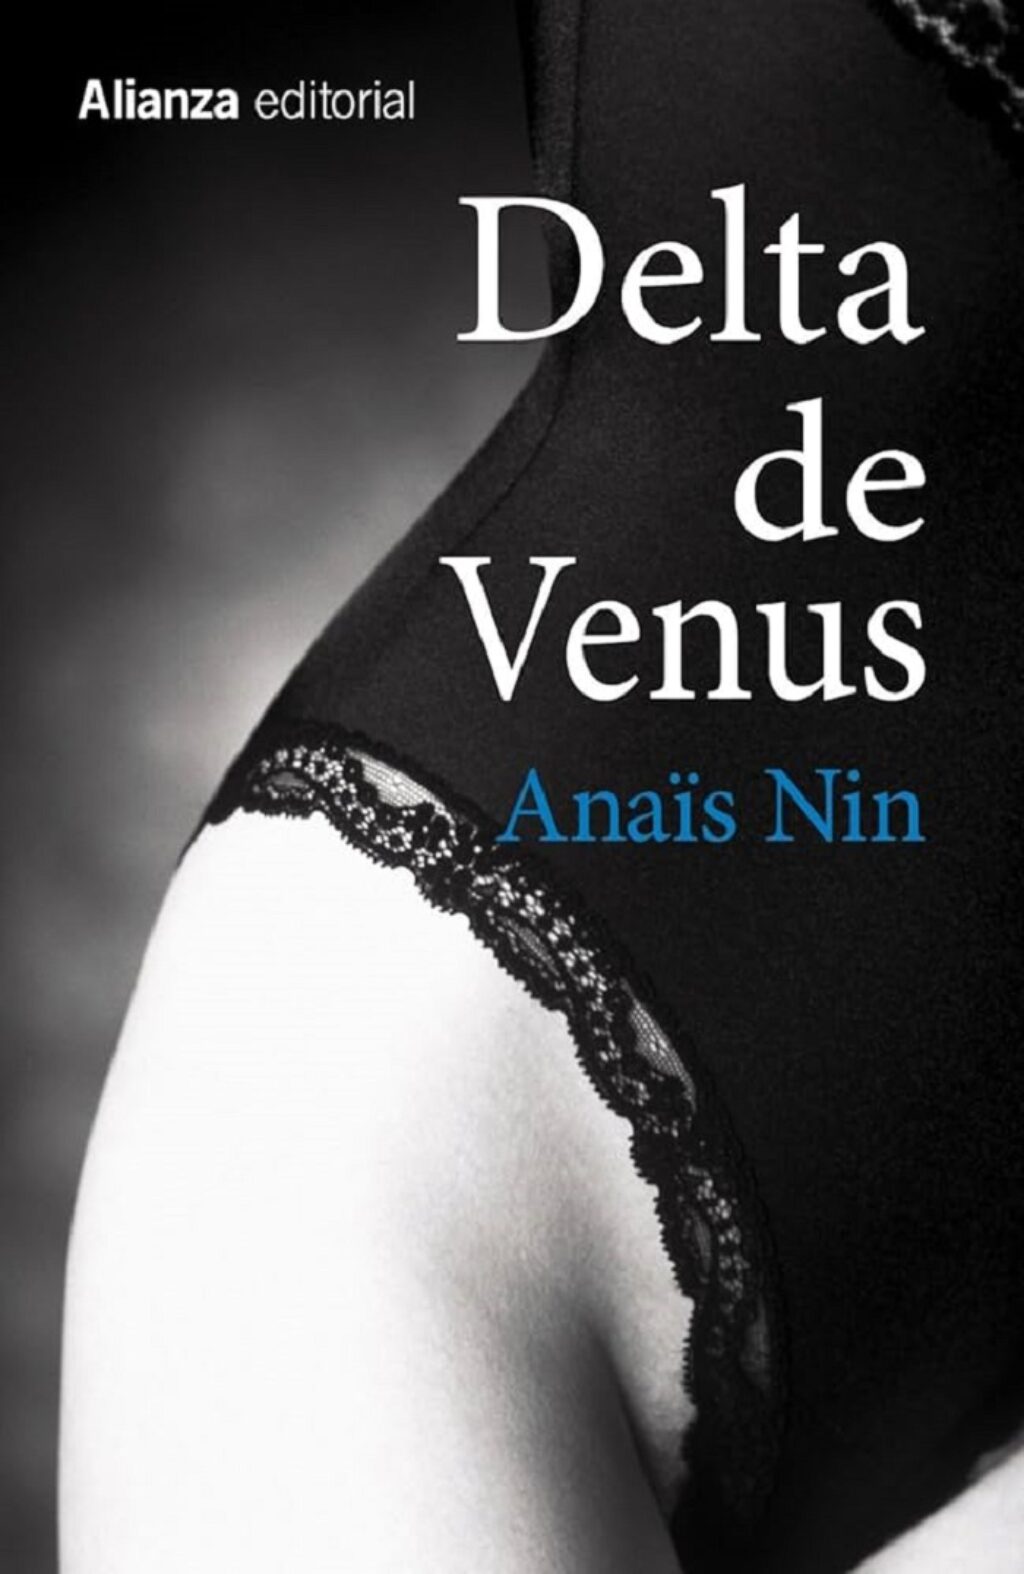 Portada de Delta de Venus (1977), de Anaïs Nin, uno de sus libros donde puede verse el erotismo.